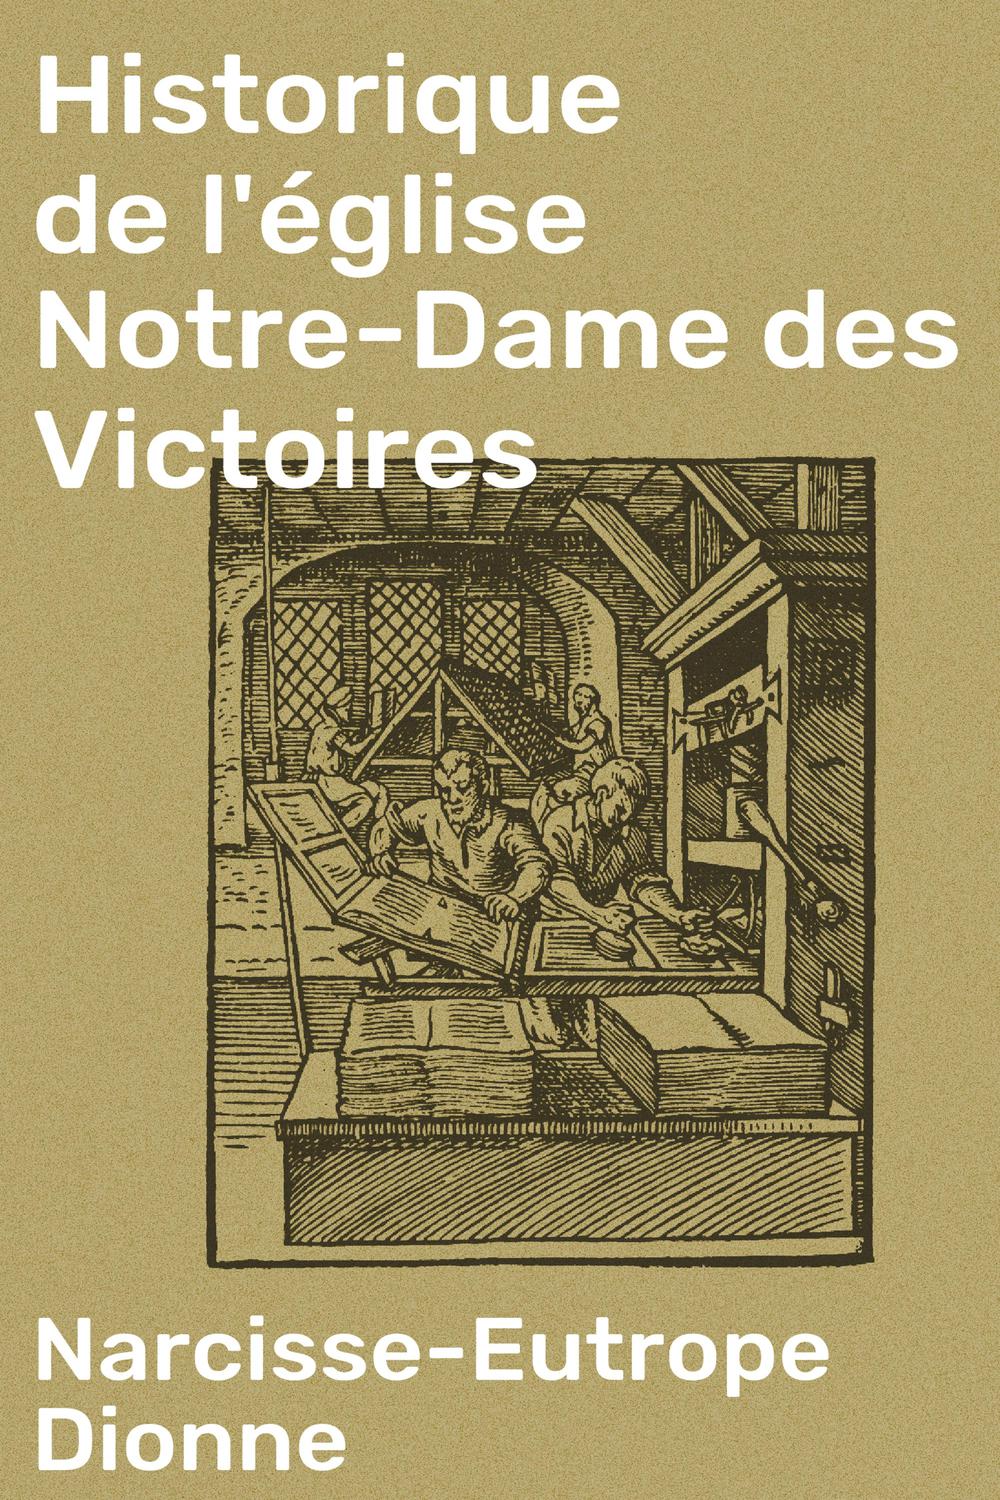 Historique de l'église Notre-Dame des Victoires - Narcisse-Eutrope Dionne, Narcisse-Eutrope Dionne